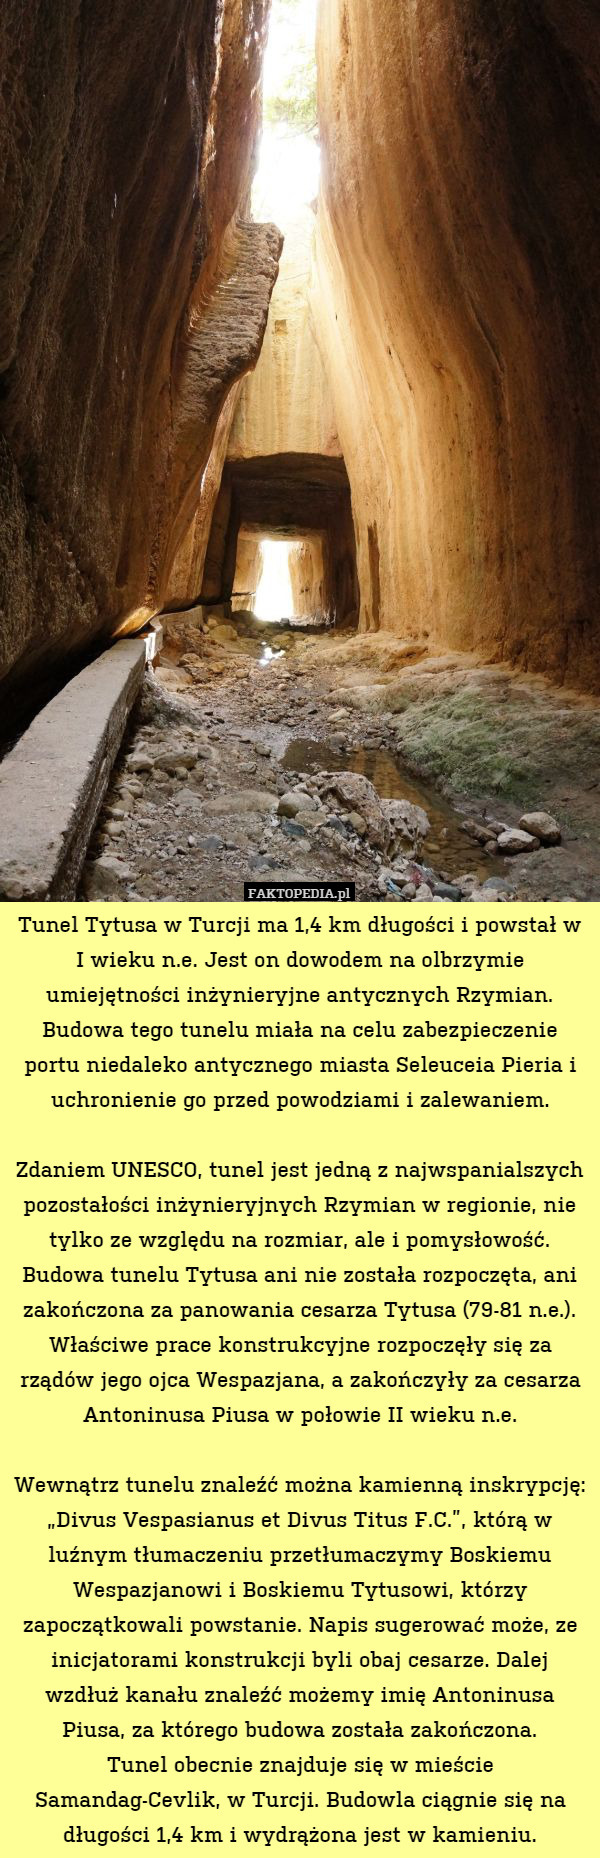 Tunel Tytusa w Turcji ma 1,4 km długości i powstał w I wieku n.e. Jest on dowodem na olbrzymie umiejętności inżynieryjne antycznych Rzymian.
Budowa tego tunelu miała na celu zabezpieczenie portu niedaleko antycznego miasta Seleuceia Pieria i uchronienie go przed powodziami i zalewaniem.

Zdaniem UNESCO, tunel jest jedną z najwspanialszych pozostałości inżynieryjnych Rzymian w regionie, nie tylko ze względu na rozmiar, ale i pomysłowość.
Budowa tunelu Tytusa ani nie została rozpoczęta, ani zakończona za panowania cesarza Tytusa (79-81 n.e.). Właściwe prace konstrukcyjne rozpoczęły się za rządów jego ojca Wespazjana, a zakończyły za cesarza Antoninusa Piusa w połowie II wieku n.e.

Wewnątrz tunelu znaleźć można kamienną inskrypcję: „Divus Vespasianus et Divus Titus F.C.”, którą w luźnym tłumaczeniu przetłumaczymy Boskiemu Wespazjanowi i Boskiemu Tytusowi, którzy zapoczątkowali powstanie. Napis sugerować może, ze inicjatorami konstrukcji byli obaj cesarze. Dalej wzdłuż kanału znaleźć możemy imię Antoninusa Piusa, za którego budowa została zakończona.
Tunel obecnie znajduje się w mieście Samandag-Cevlik, w Turcji. Budowla ciągnie się na długości 1,4 km i wydrążona jest w kamieniu. 